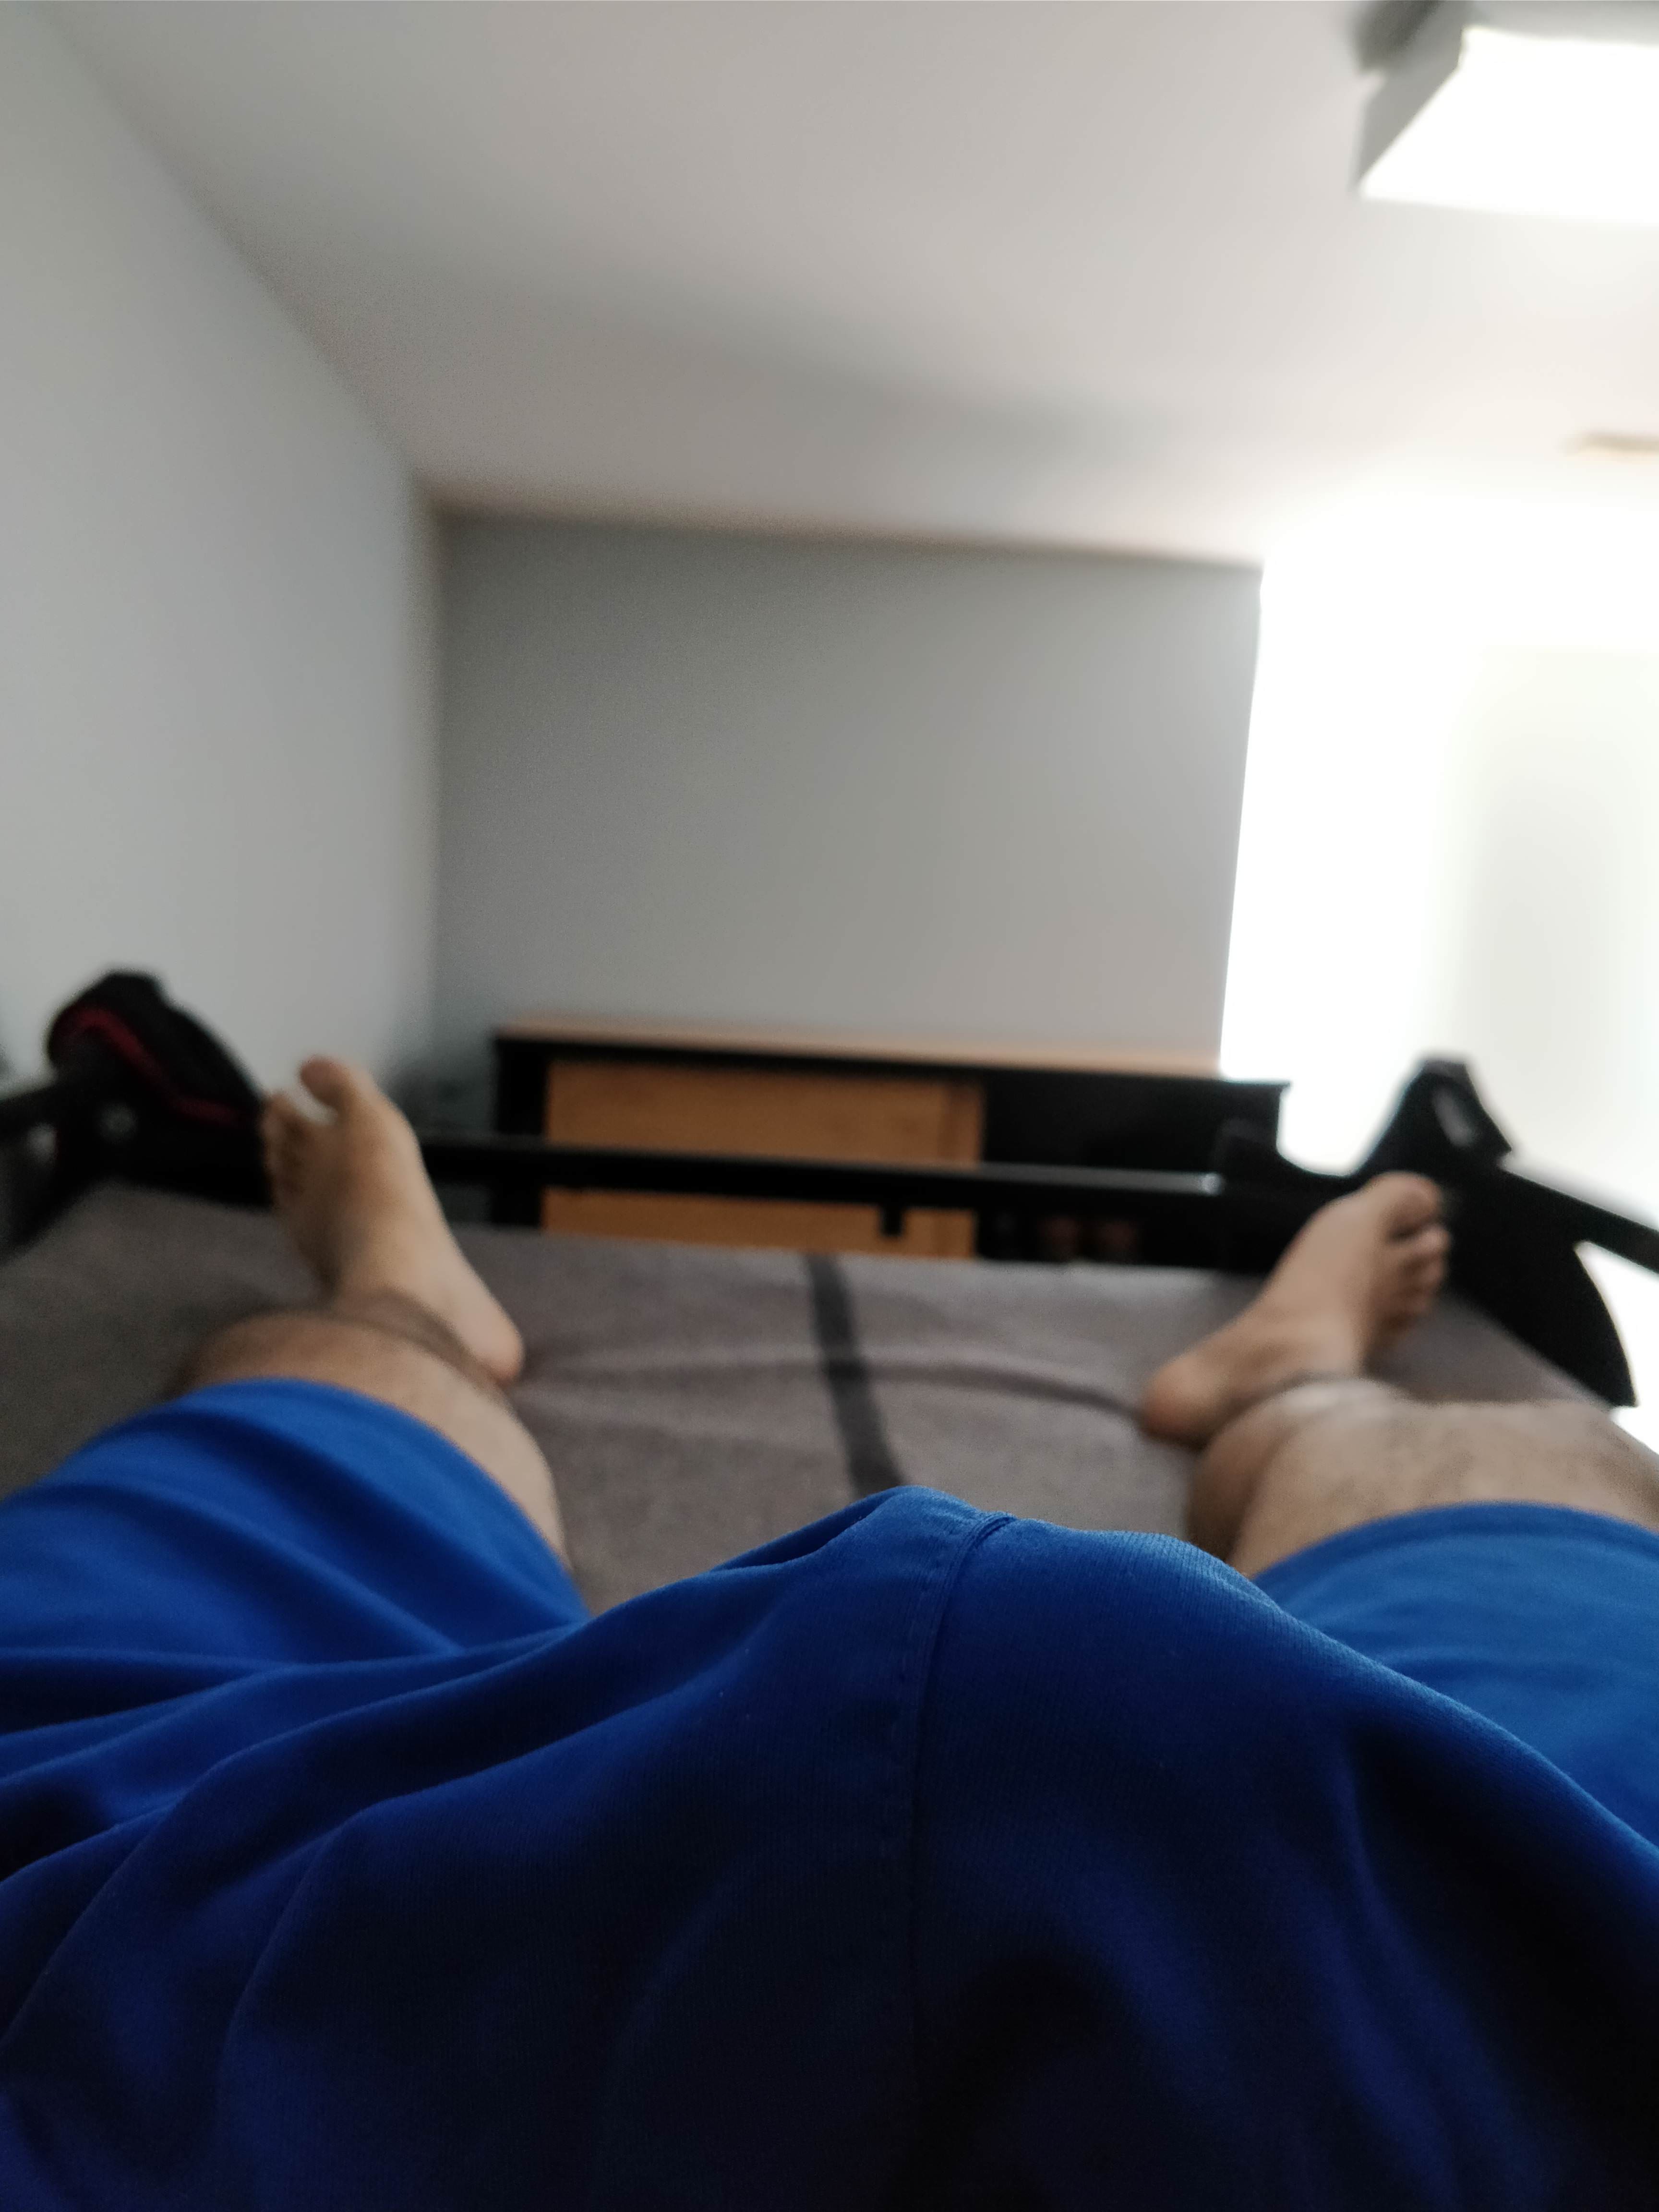 I woke up like this | Utbulinger  Porno | Hot XXX Gays